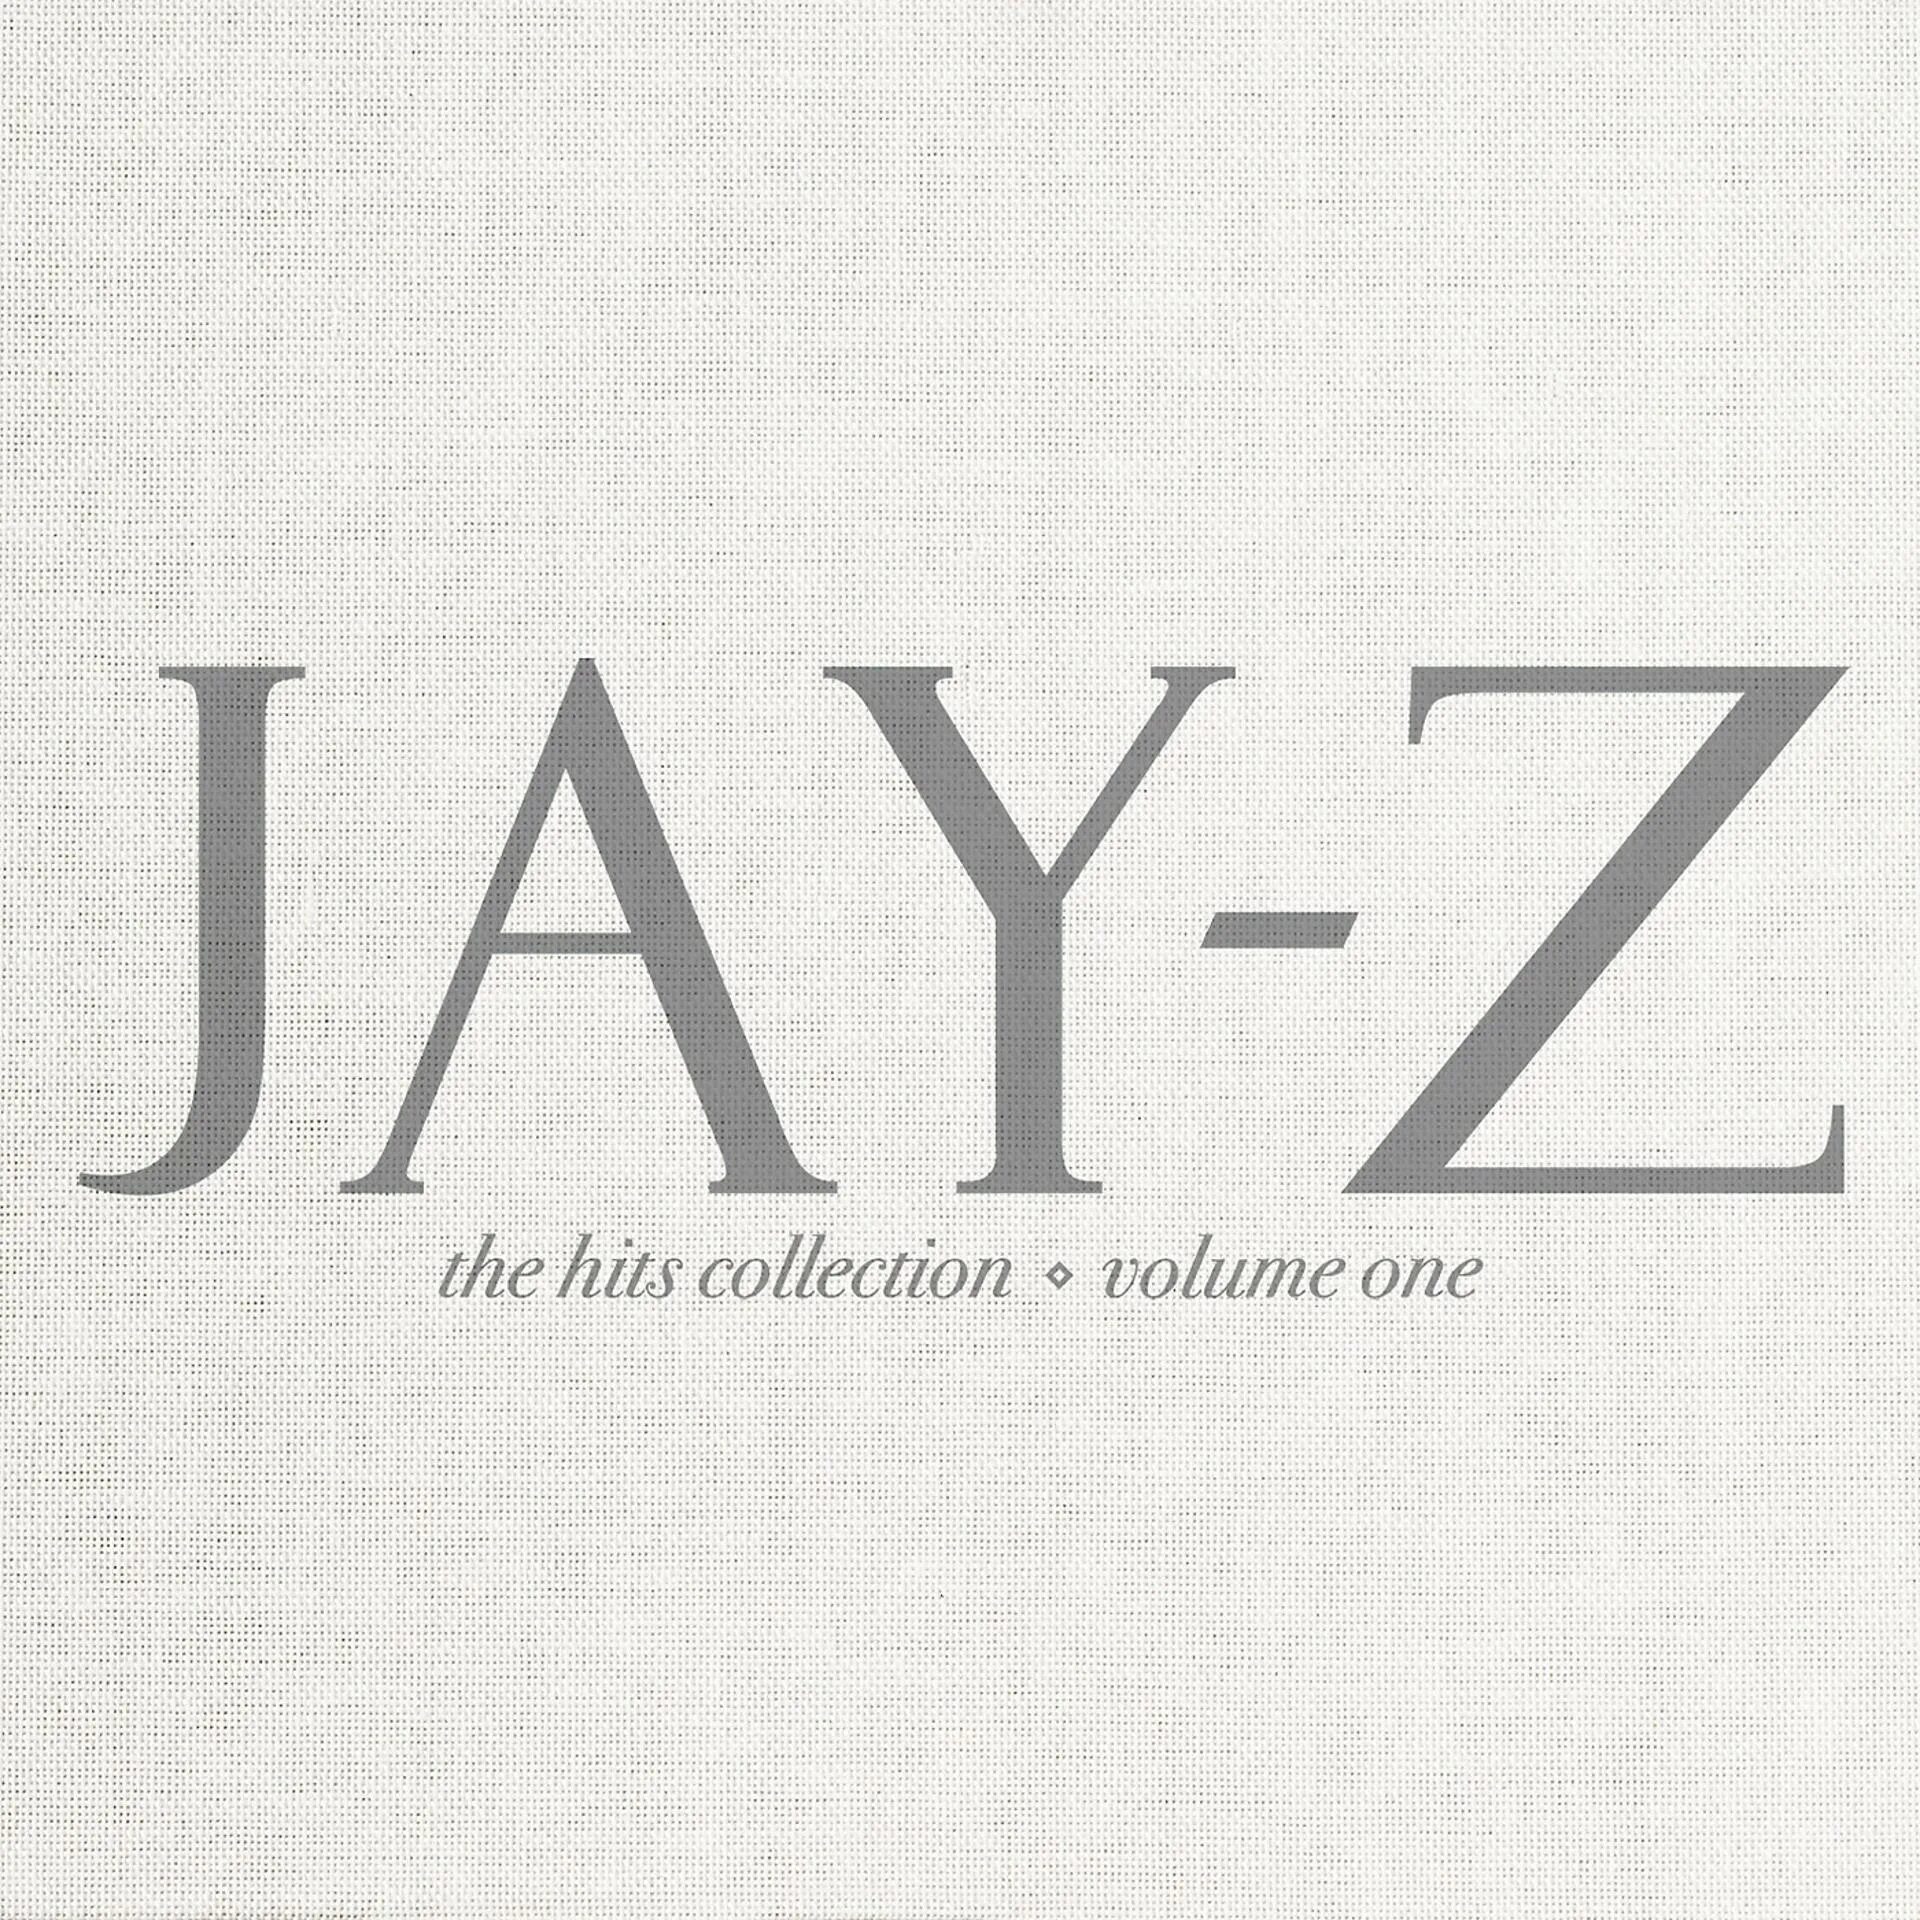 Jay z обложка. Jay-z the Hits collection Volume one. Jay z обложки альбомов. Jay-z the Hits collection Volume one Deluxe. Обложки z